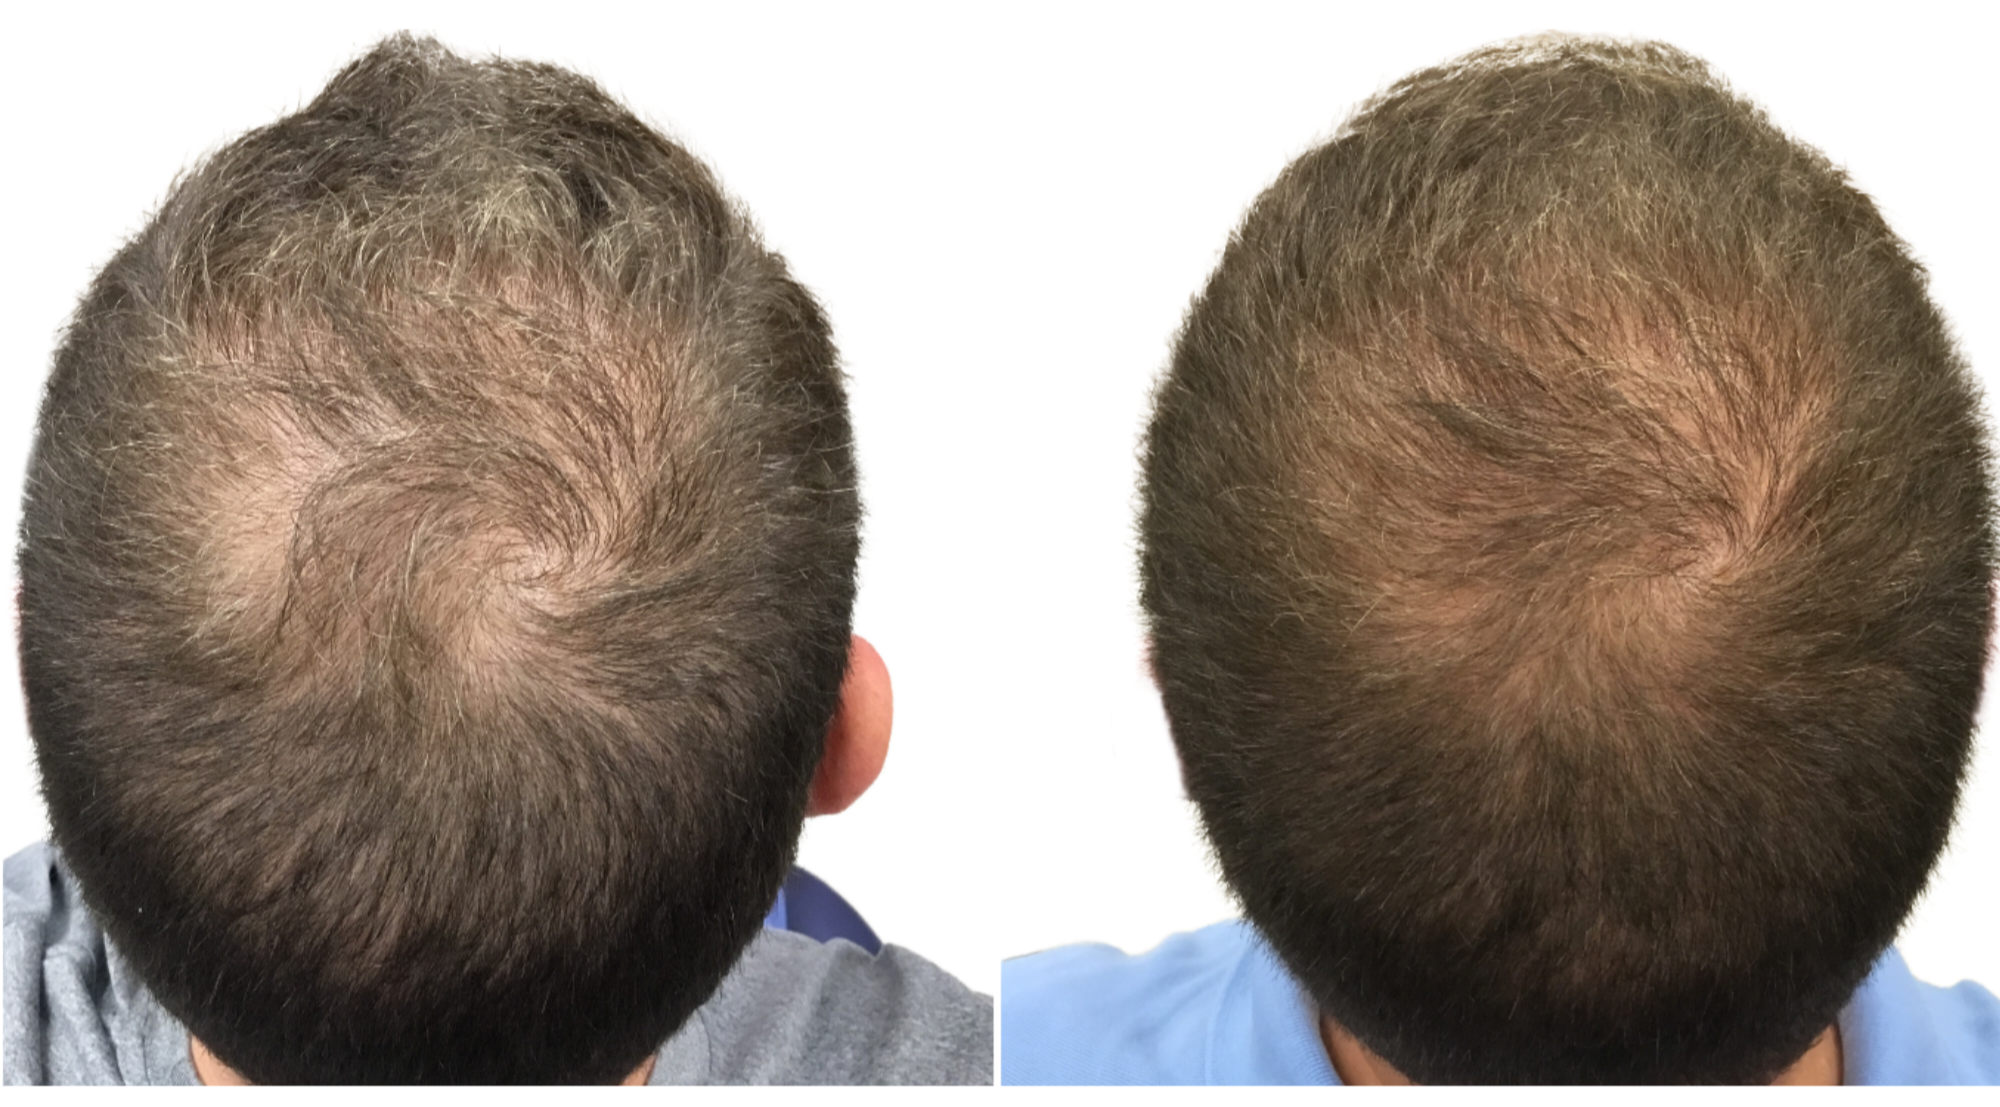 Traitement PRP pour les cheveux : stimulez la croissance capillaire et améliorez la densité des cheveux grâce à cette procédure non chirurgicale. Résultats avant après chez un homme